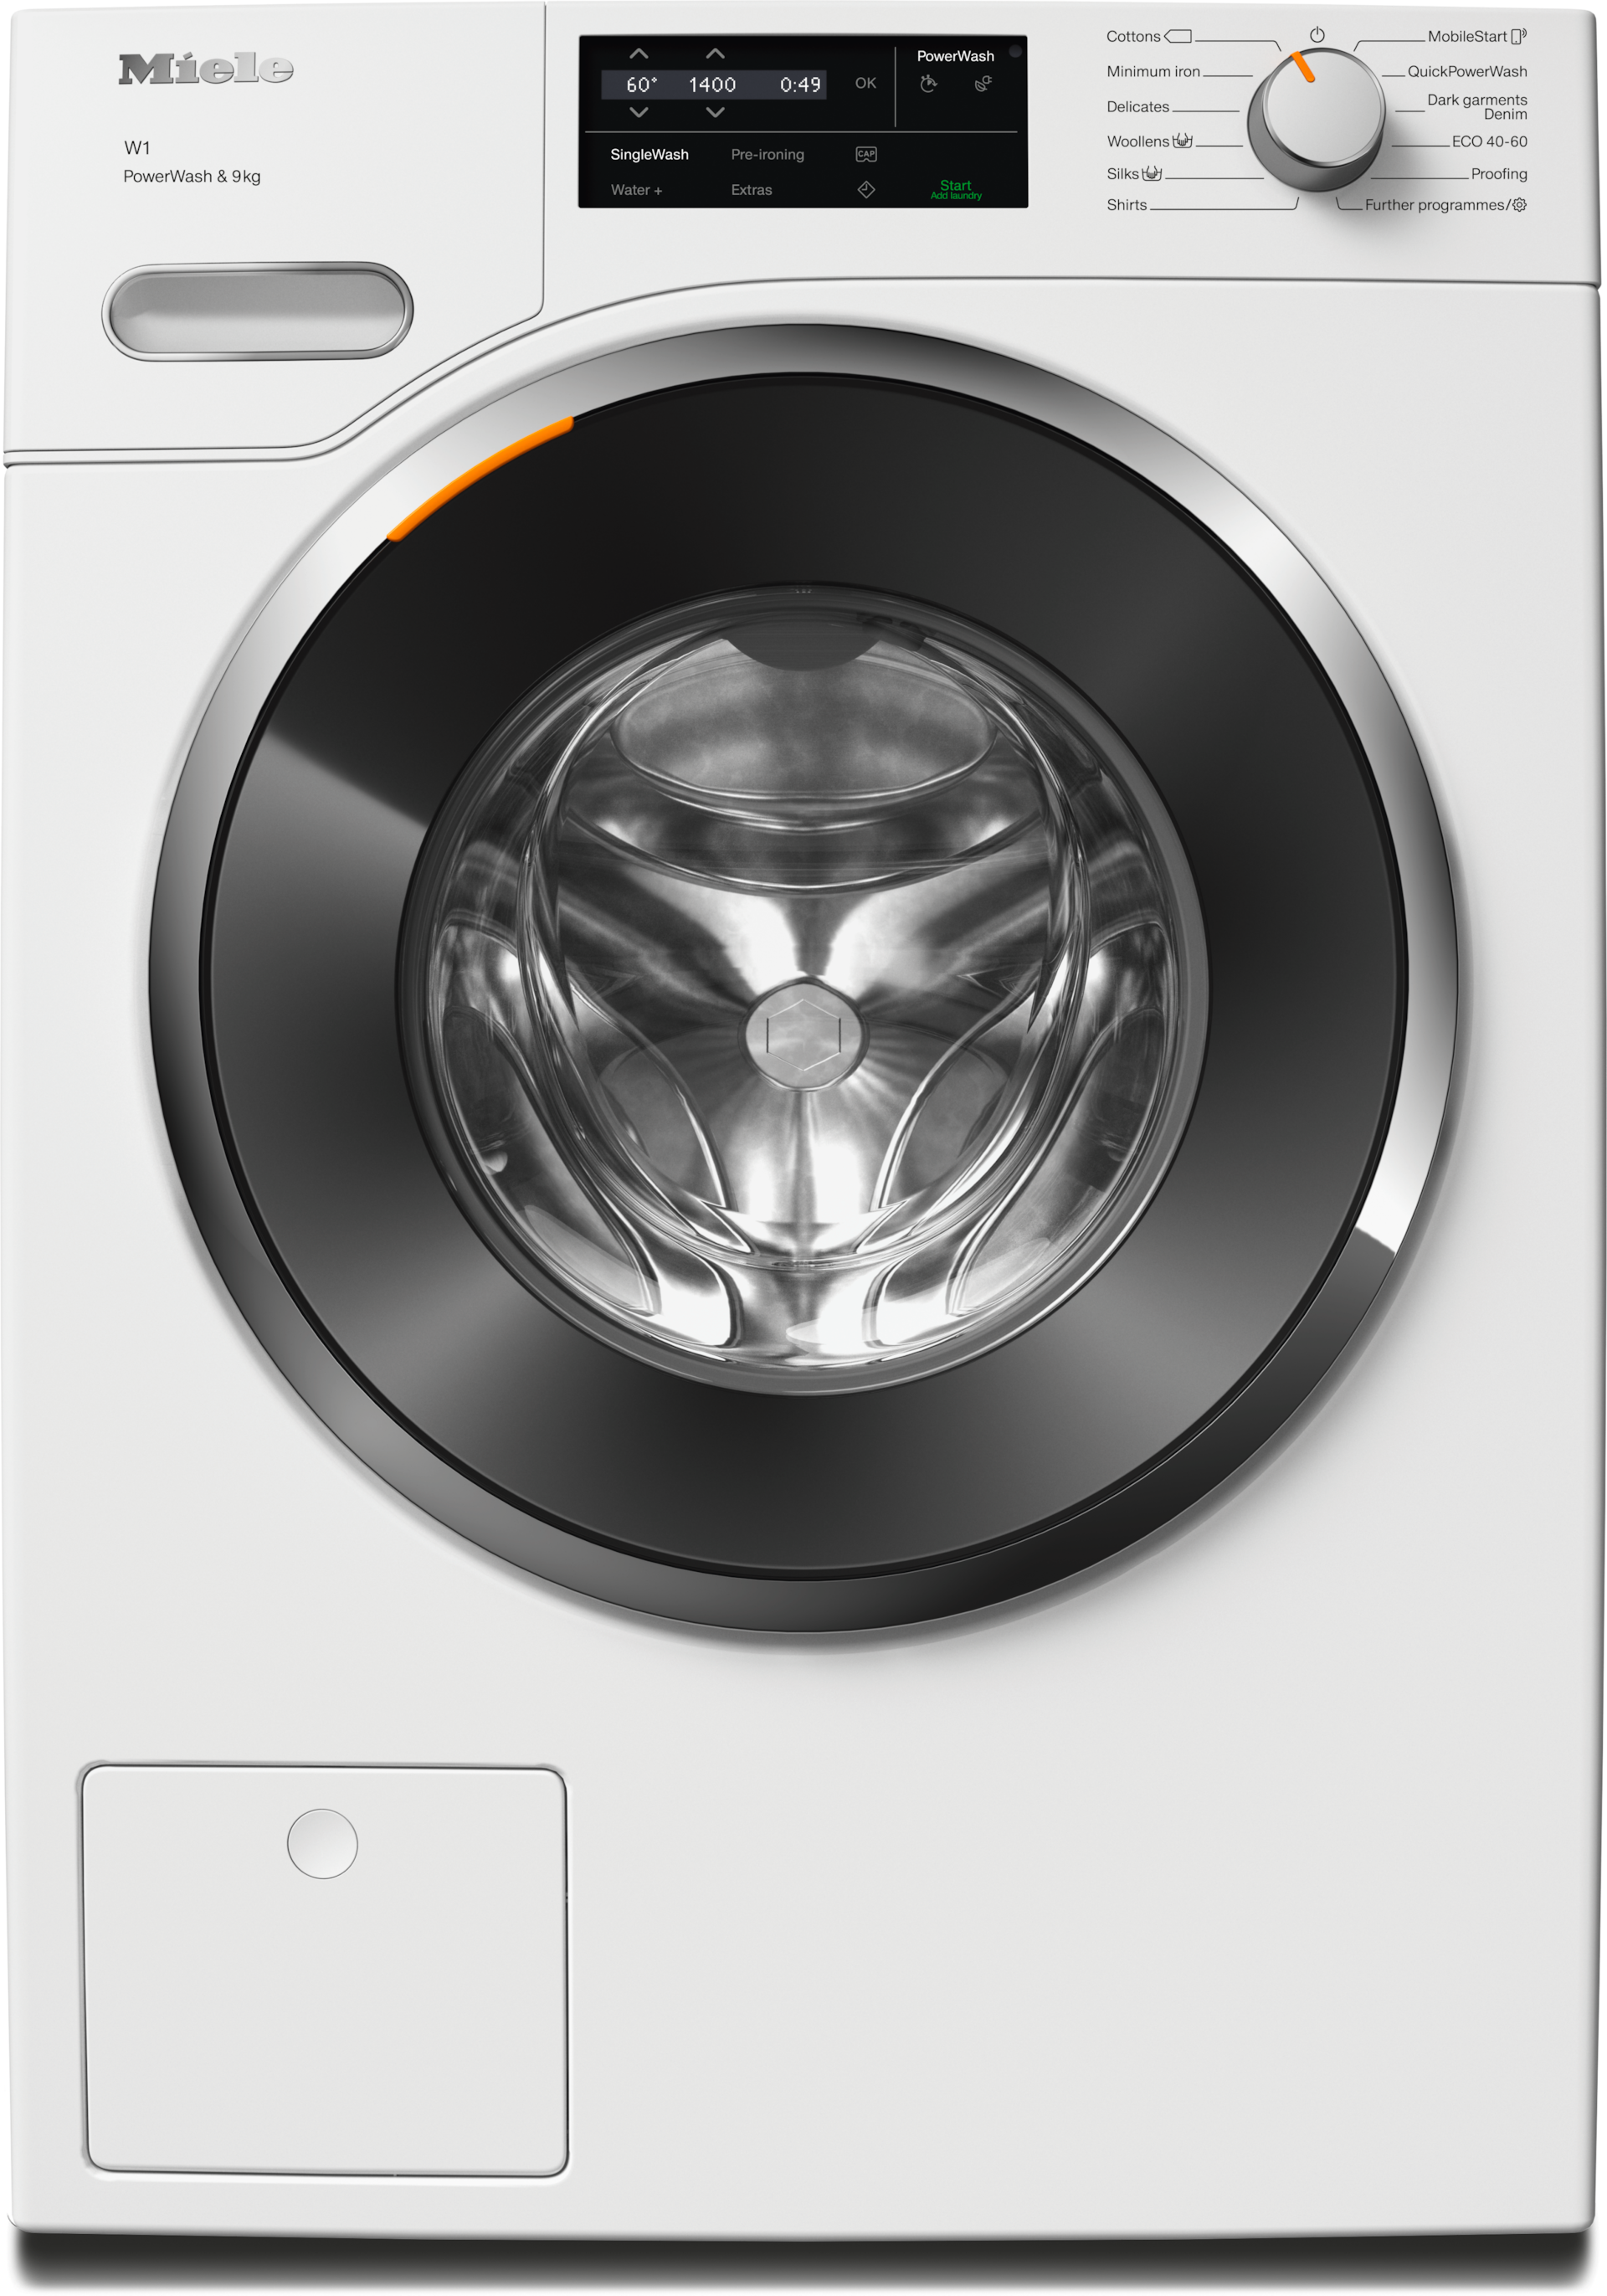 Washing machines - WWG360 WCS PWash&9kg Lotus white - 1